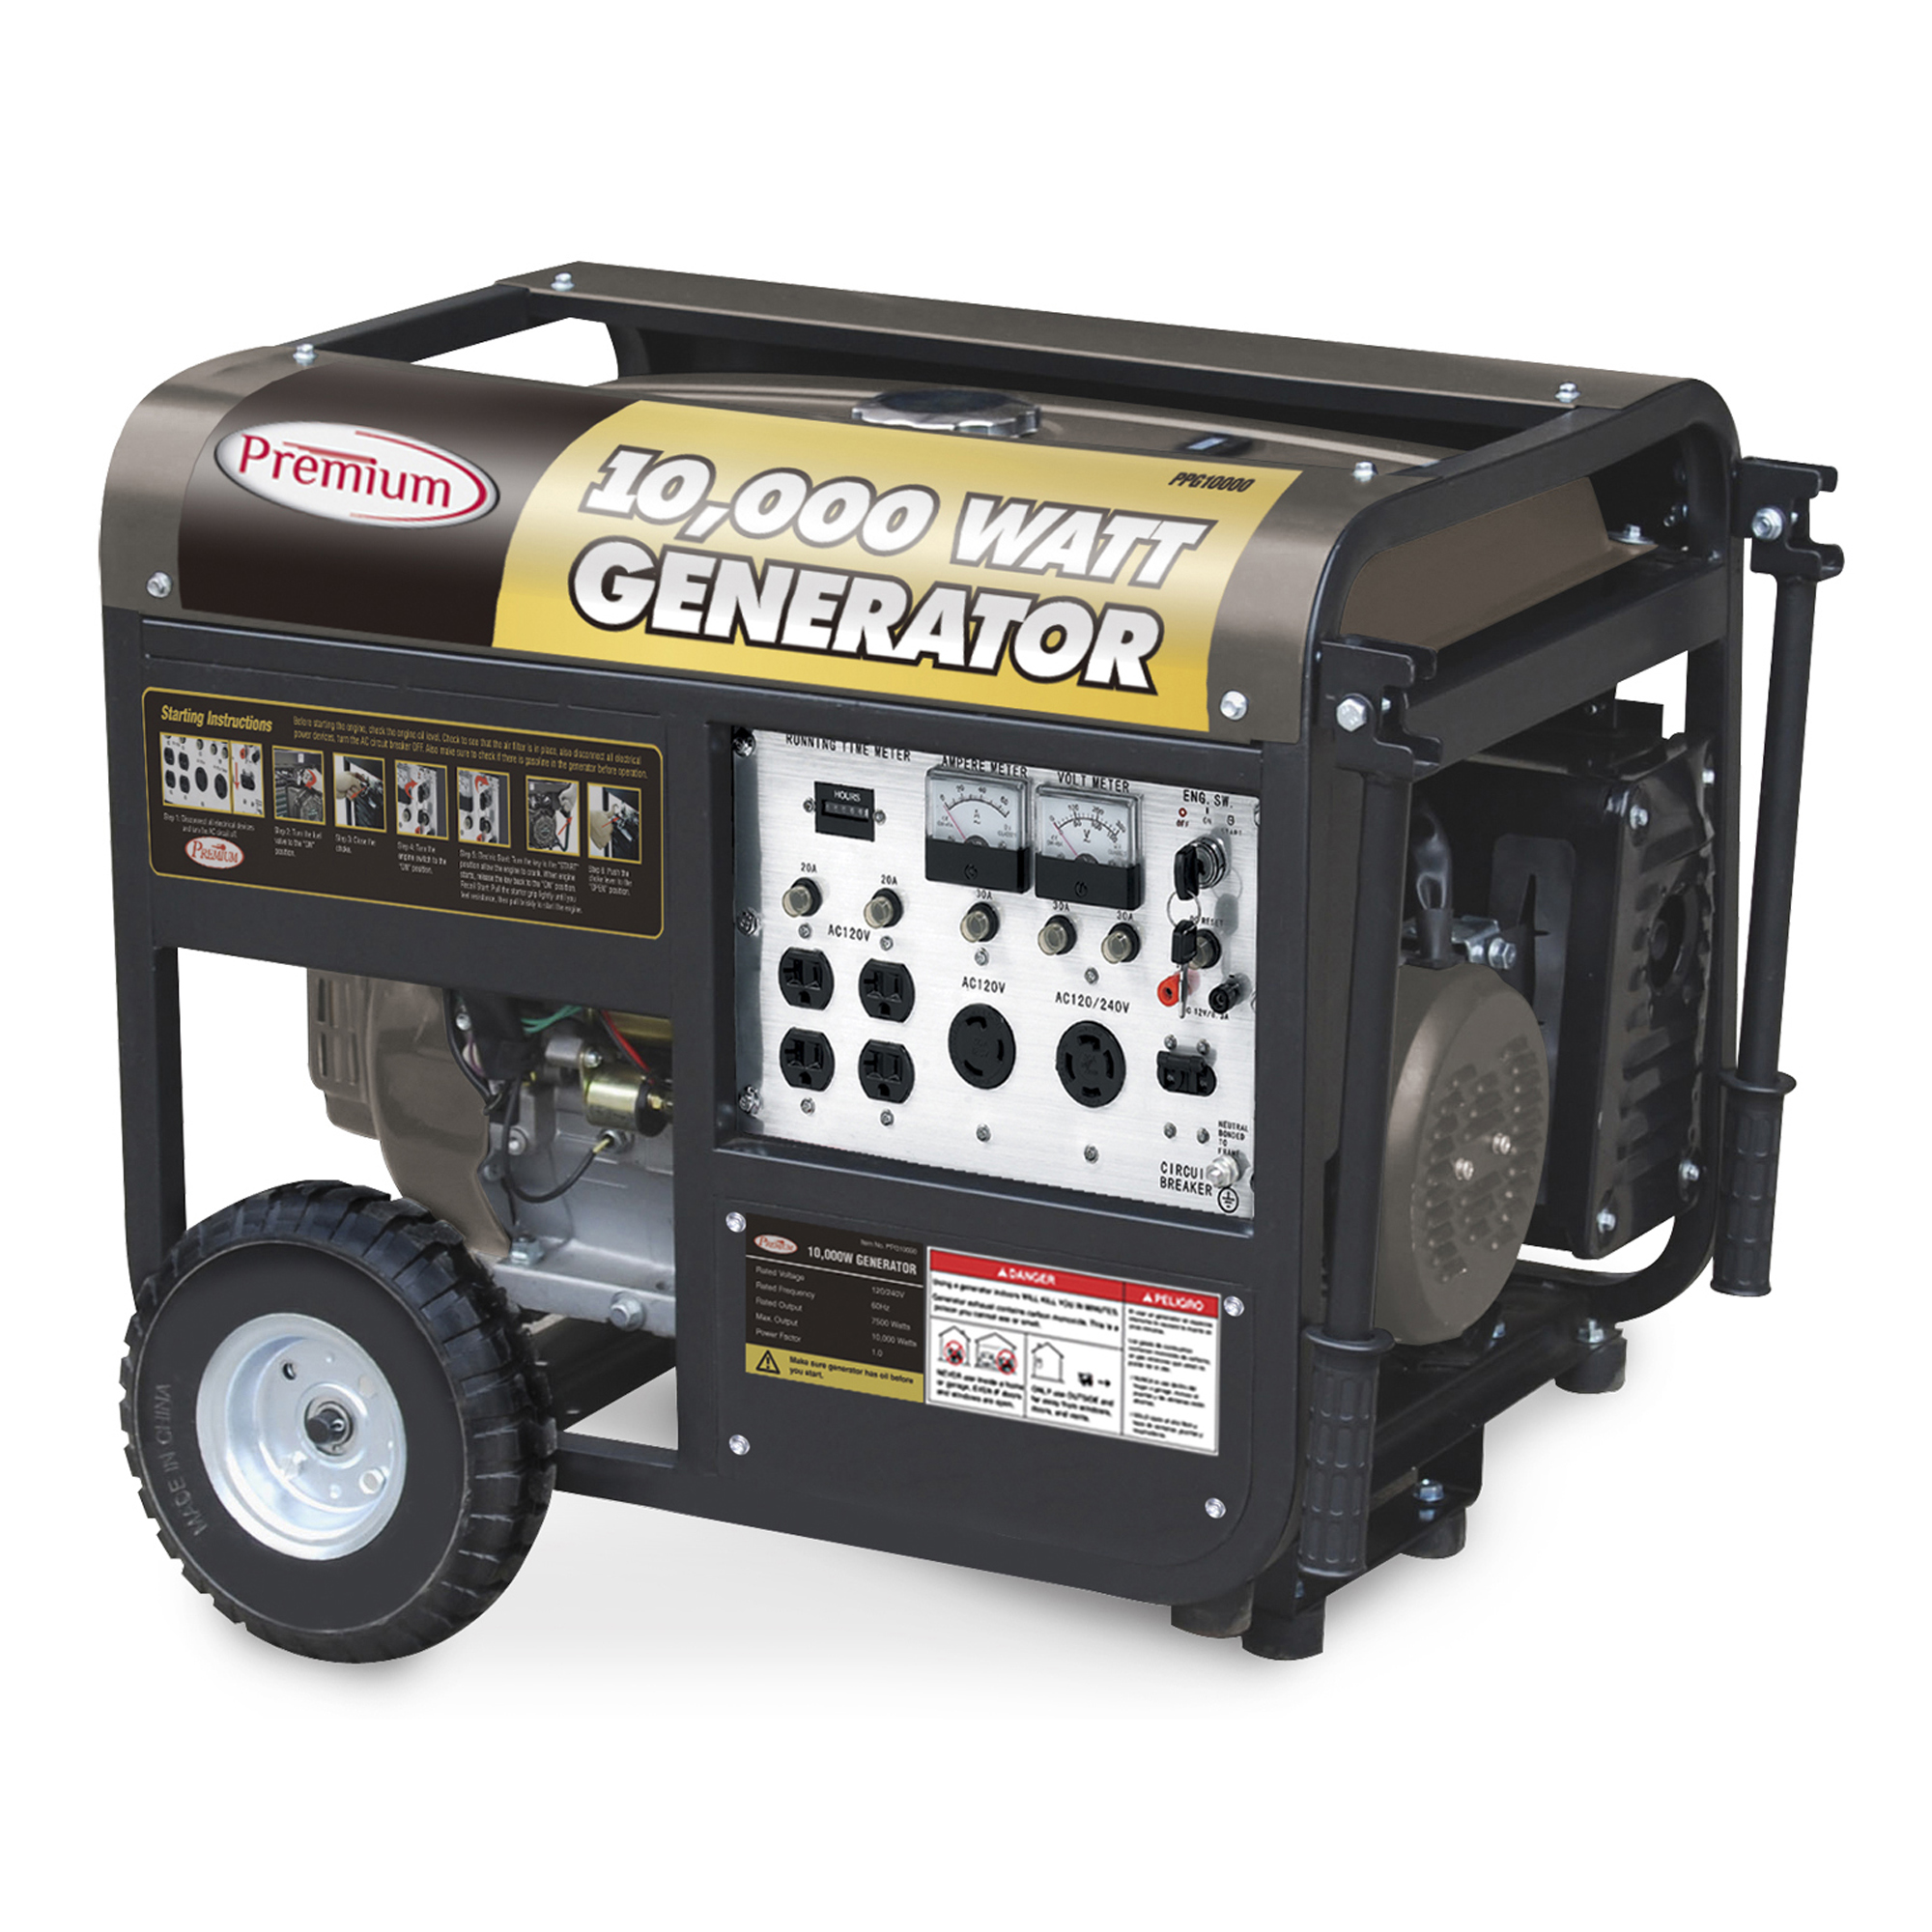 Energy-Efficient Appliances For Portable Generators.